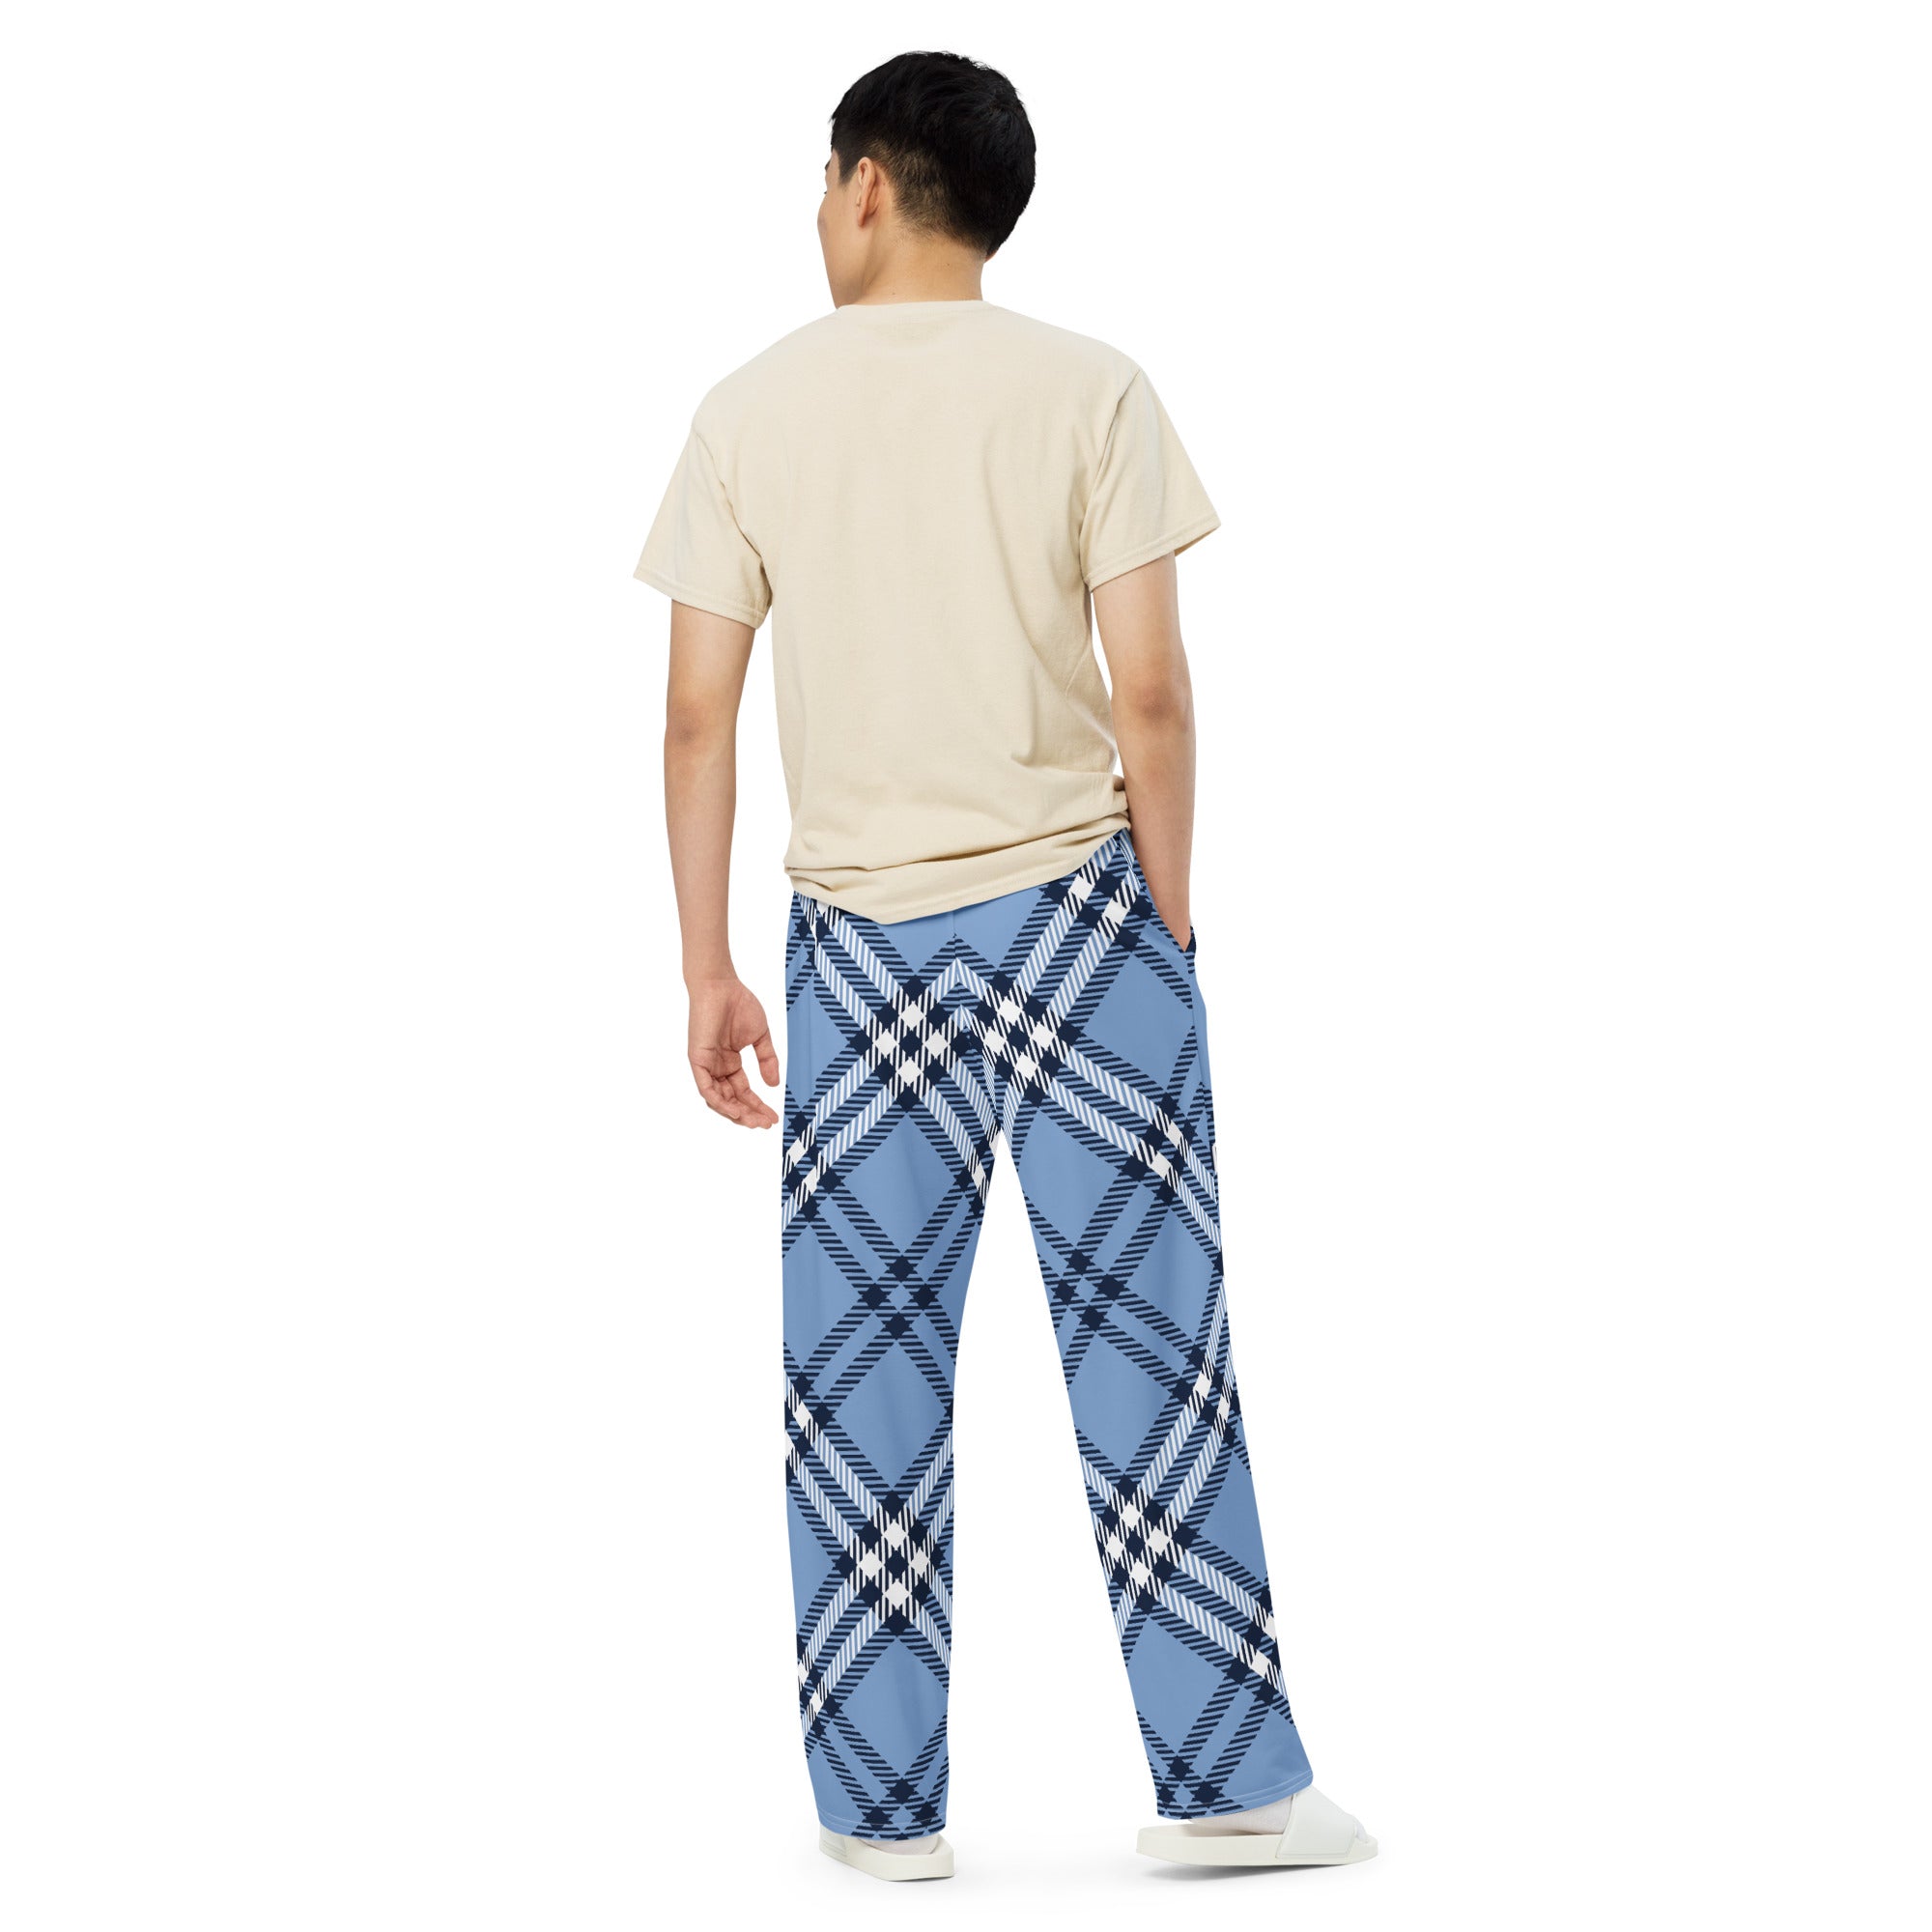 Kentucky Pajama Pants